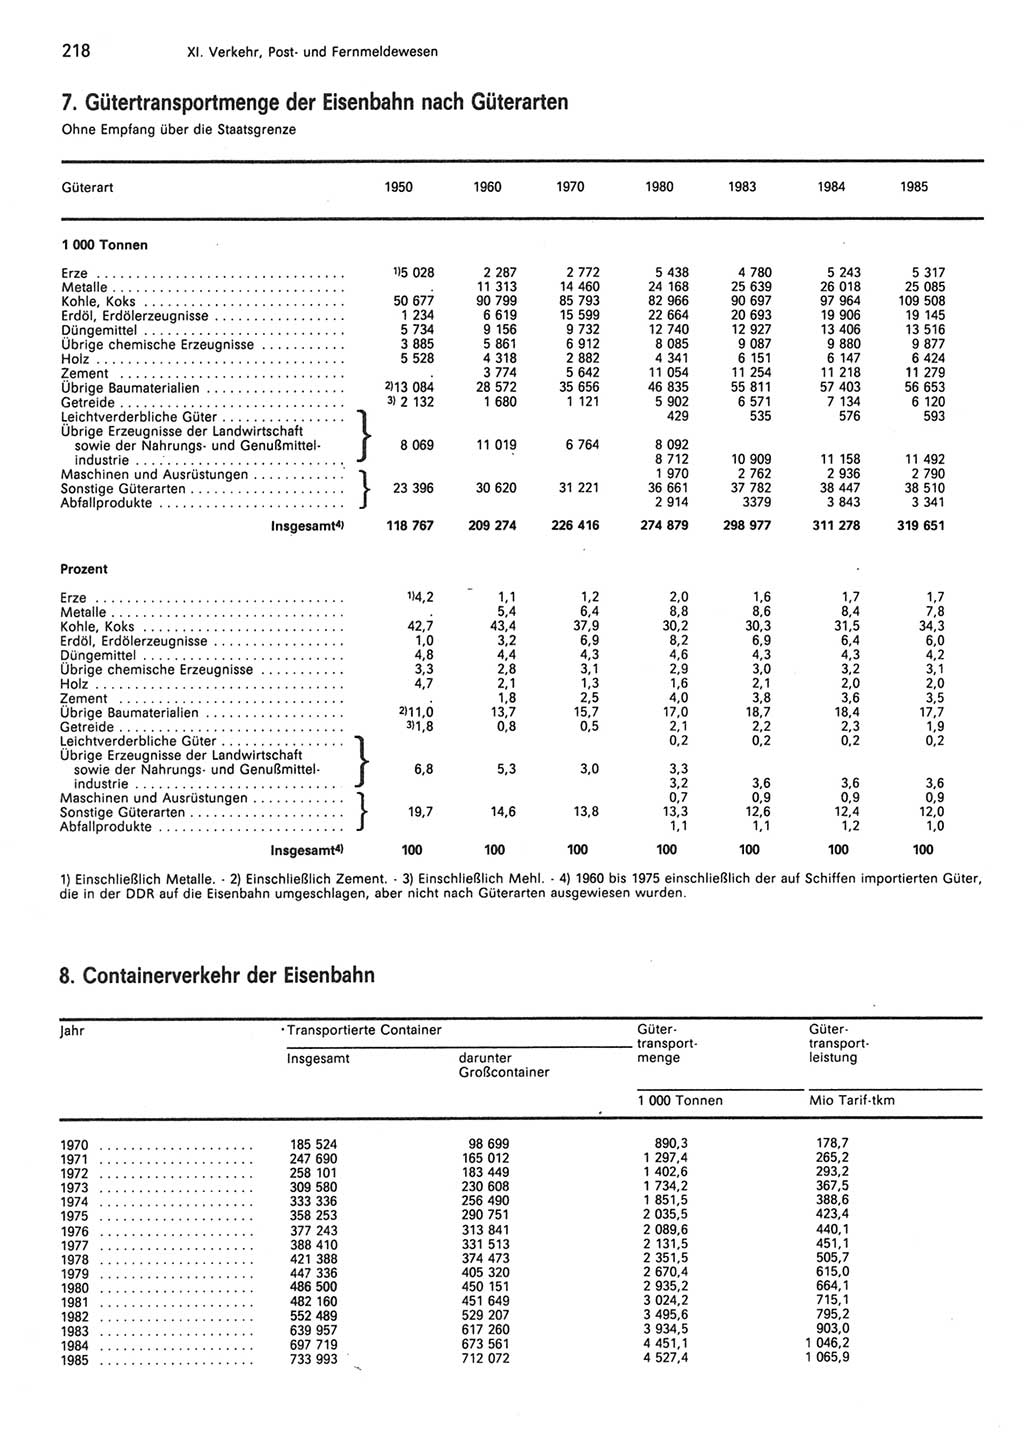 Statistisches Jahrbuch der Deutschen Demokratischen Republik (DDR) 1986, Seite 218 (Stat. Jb. DDR 1986, S. 218)